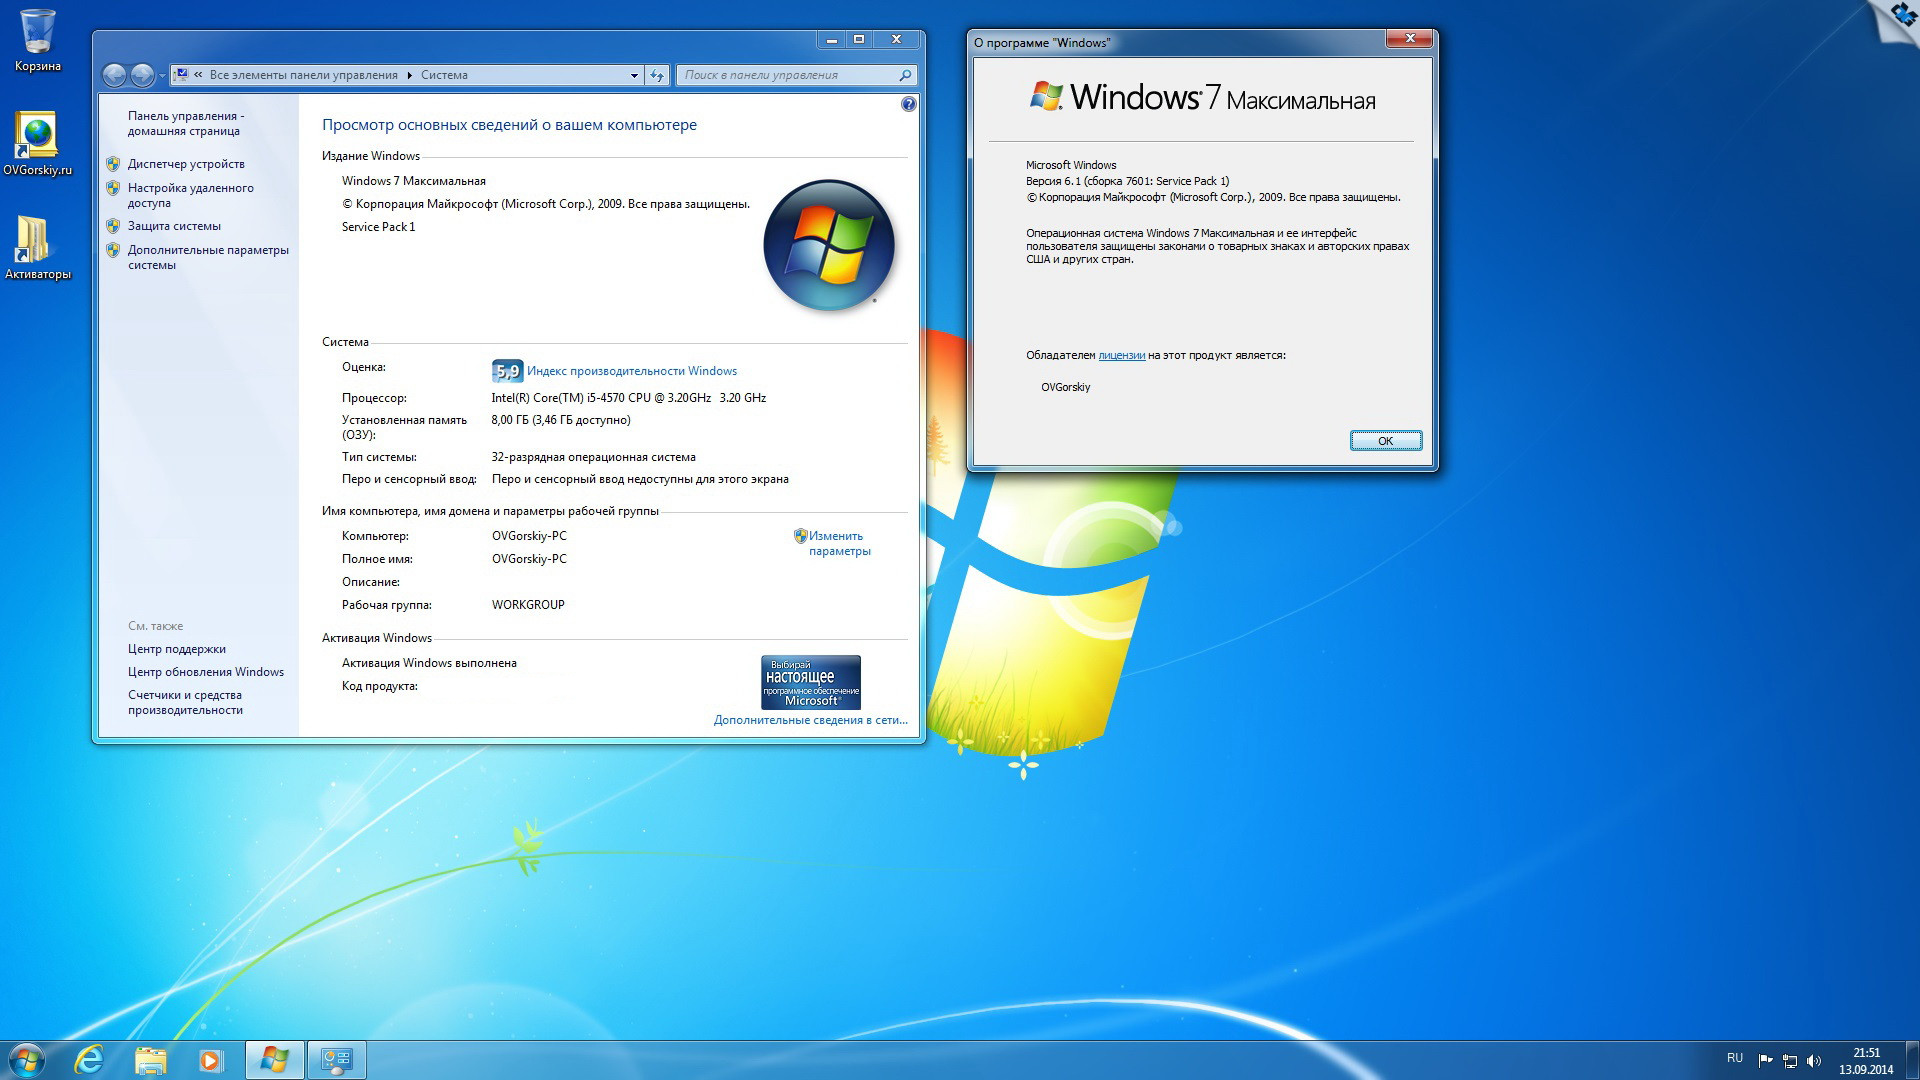 Модель windows 7. Установочный ОС Windows 7. Характеристики ОС Windows 7. Windows 7 максимальная. Windows 7 максимальная компьютер.